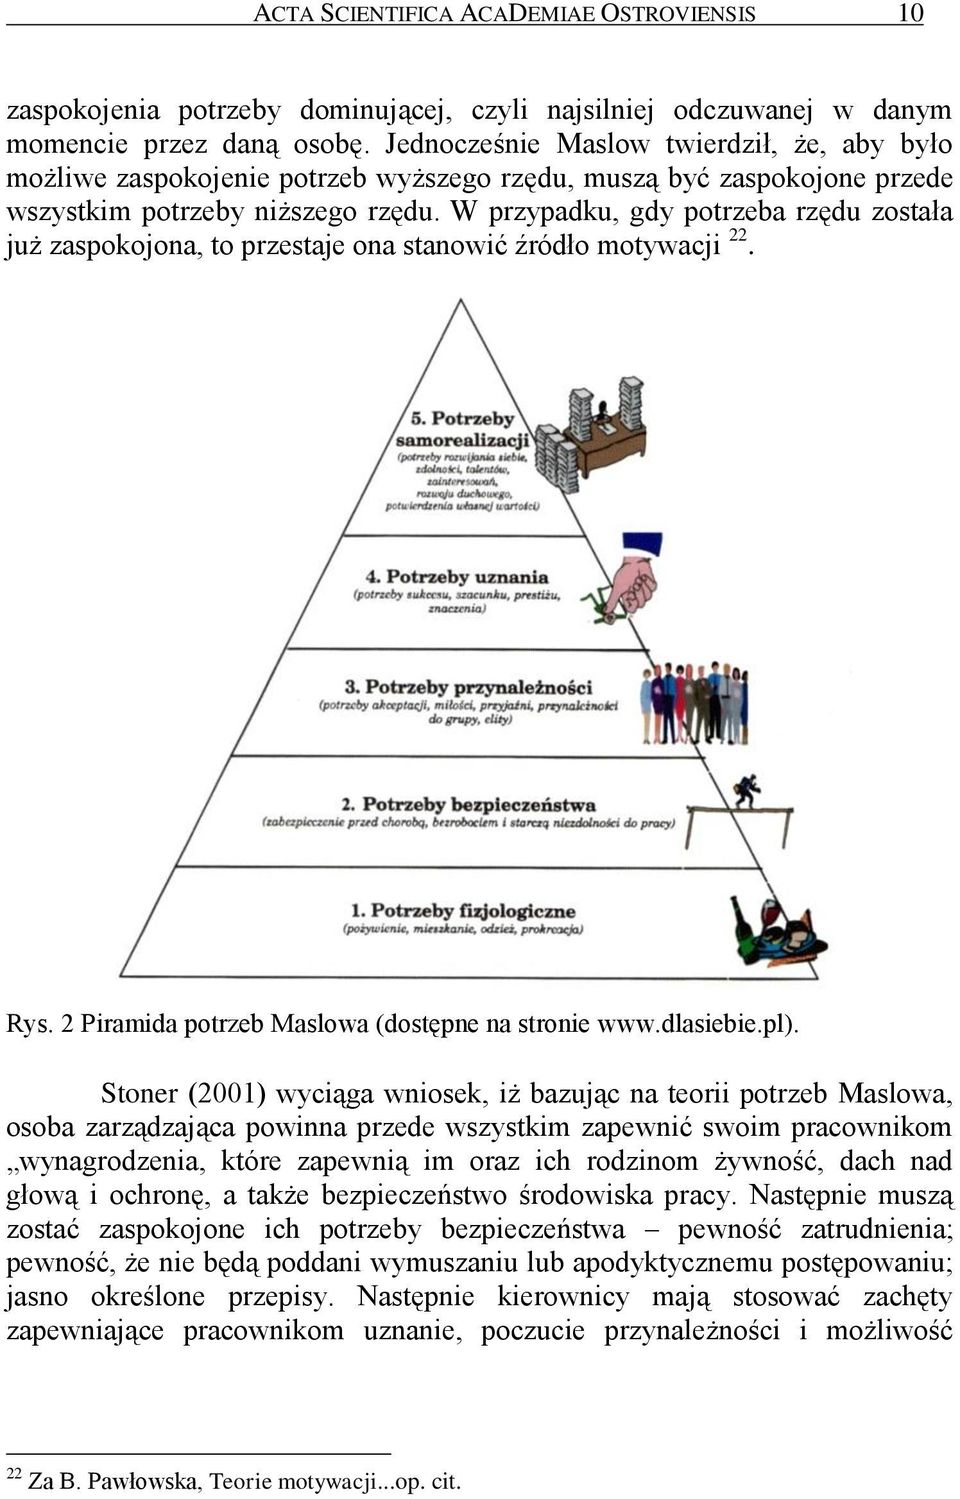 W przypadku, gdy potrzeba rzędu została już zaspokojona, to przestaje ona stanowić źródło motywacji 22. Rys. 2 Piramida potrzeb Maslowa (dostępne na stronie www.dlasiebie.pl).